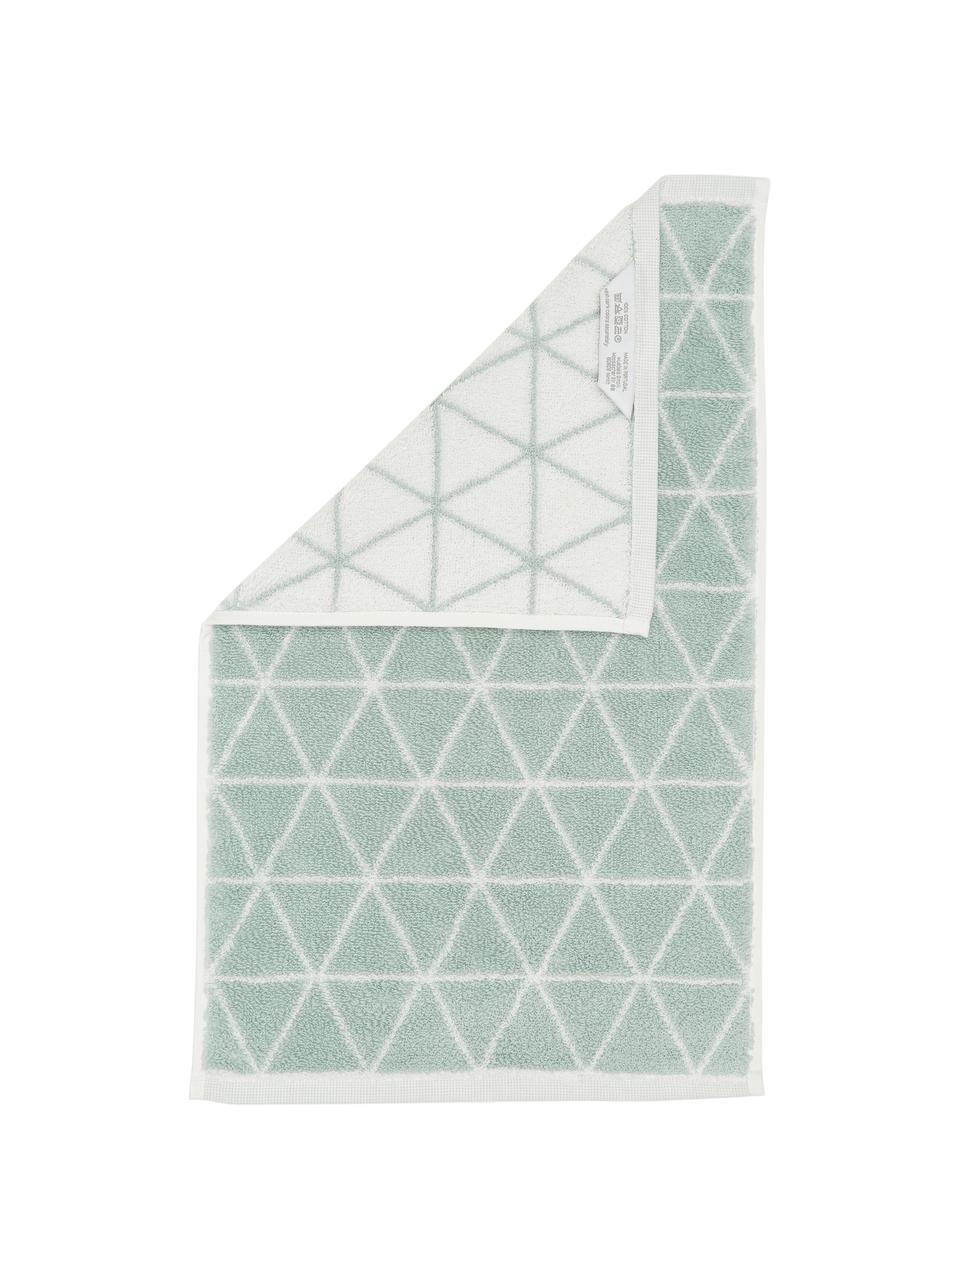 Dubbelzijdige handdoek Elina met grafisch patroon, Mintgroen, crèmewit, Handdoek, B 50 x L 100 cm, 2 stuks